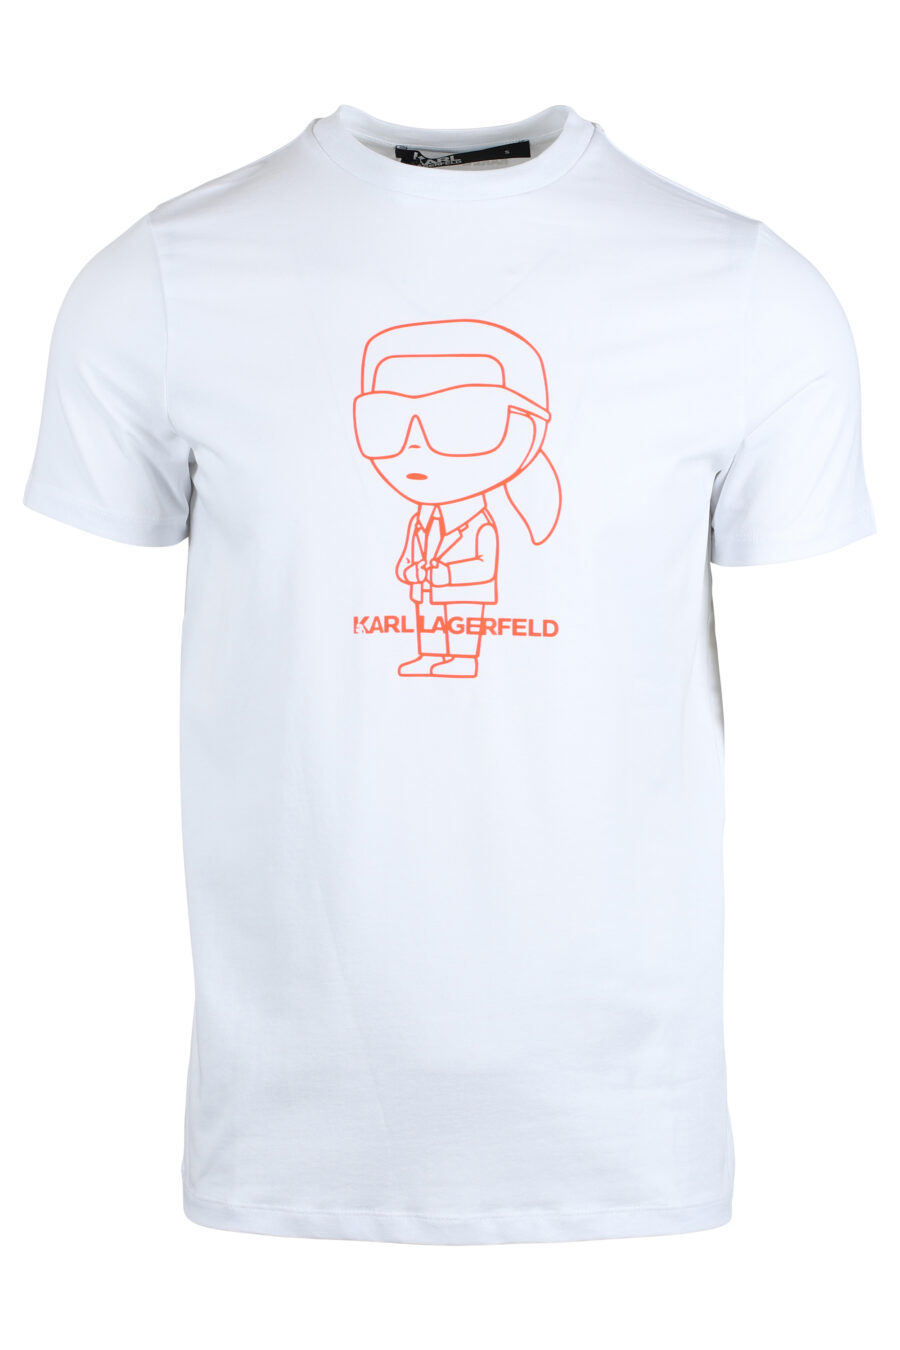 White T-shirt with "karl" maxilogo in orange silhouette - IMG 4758